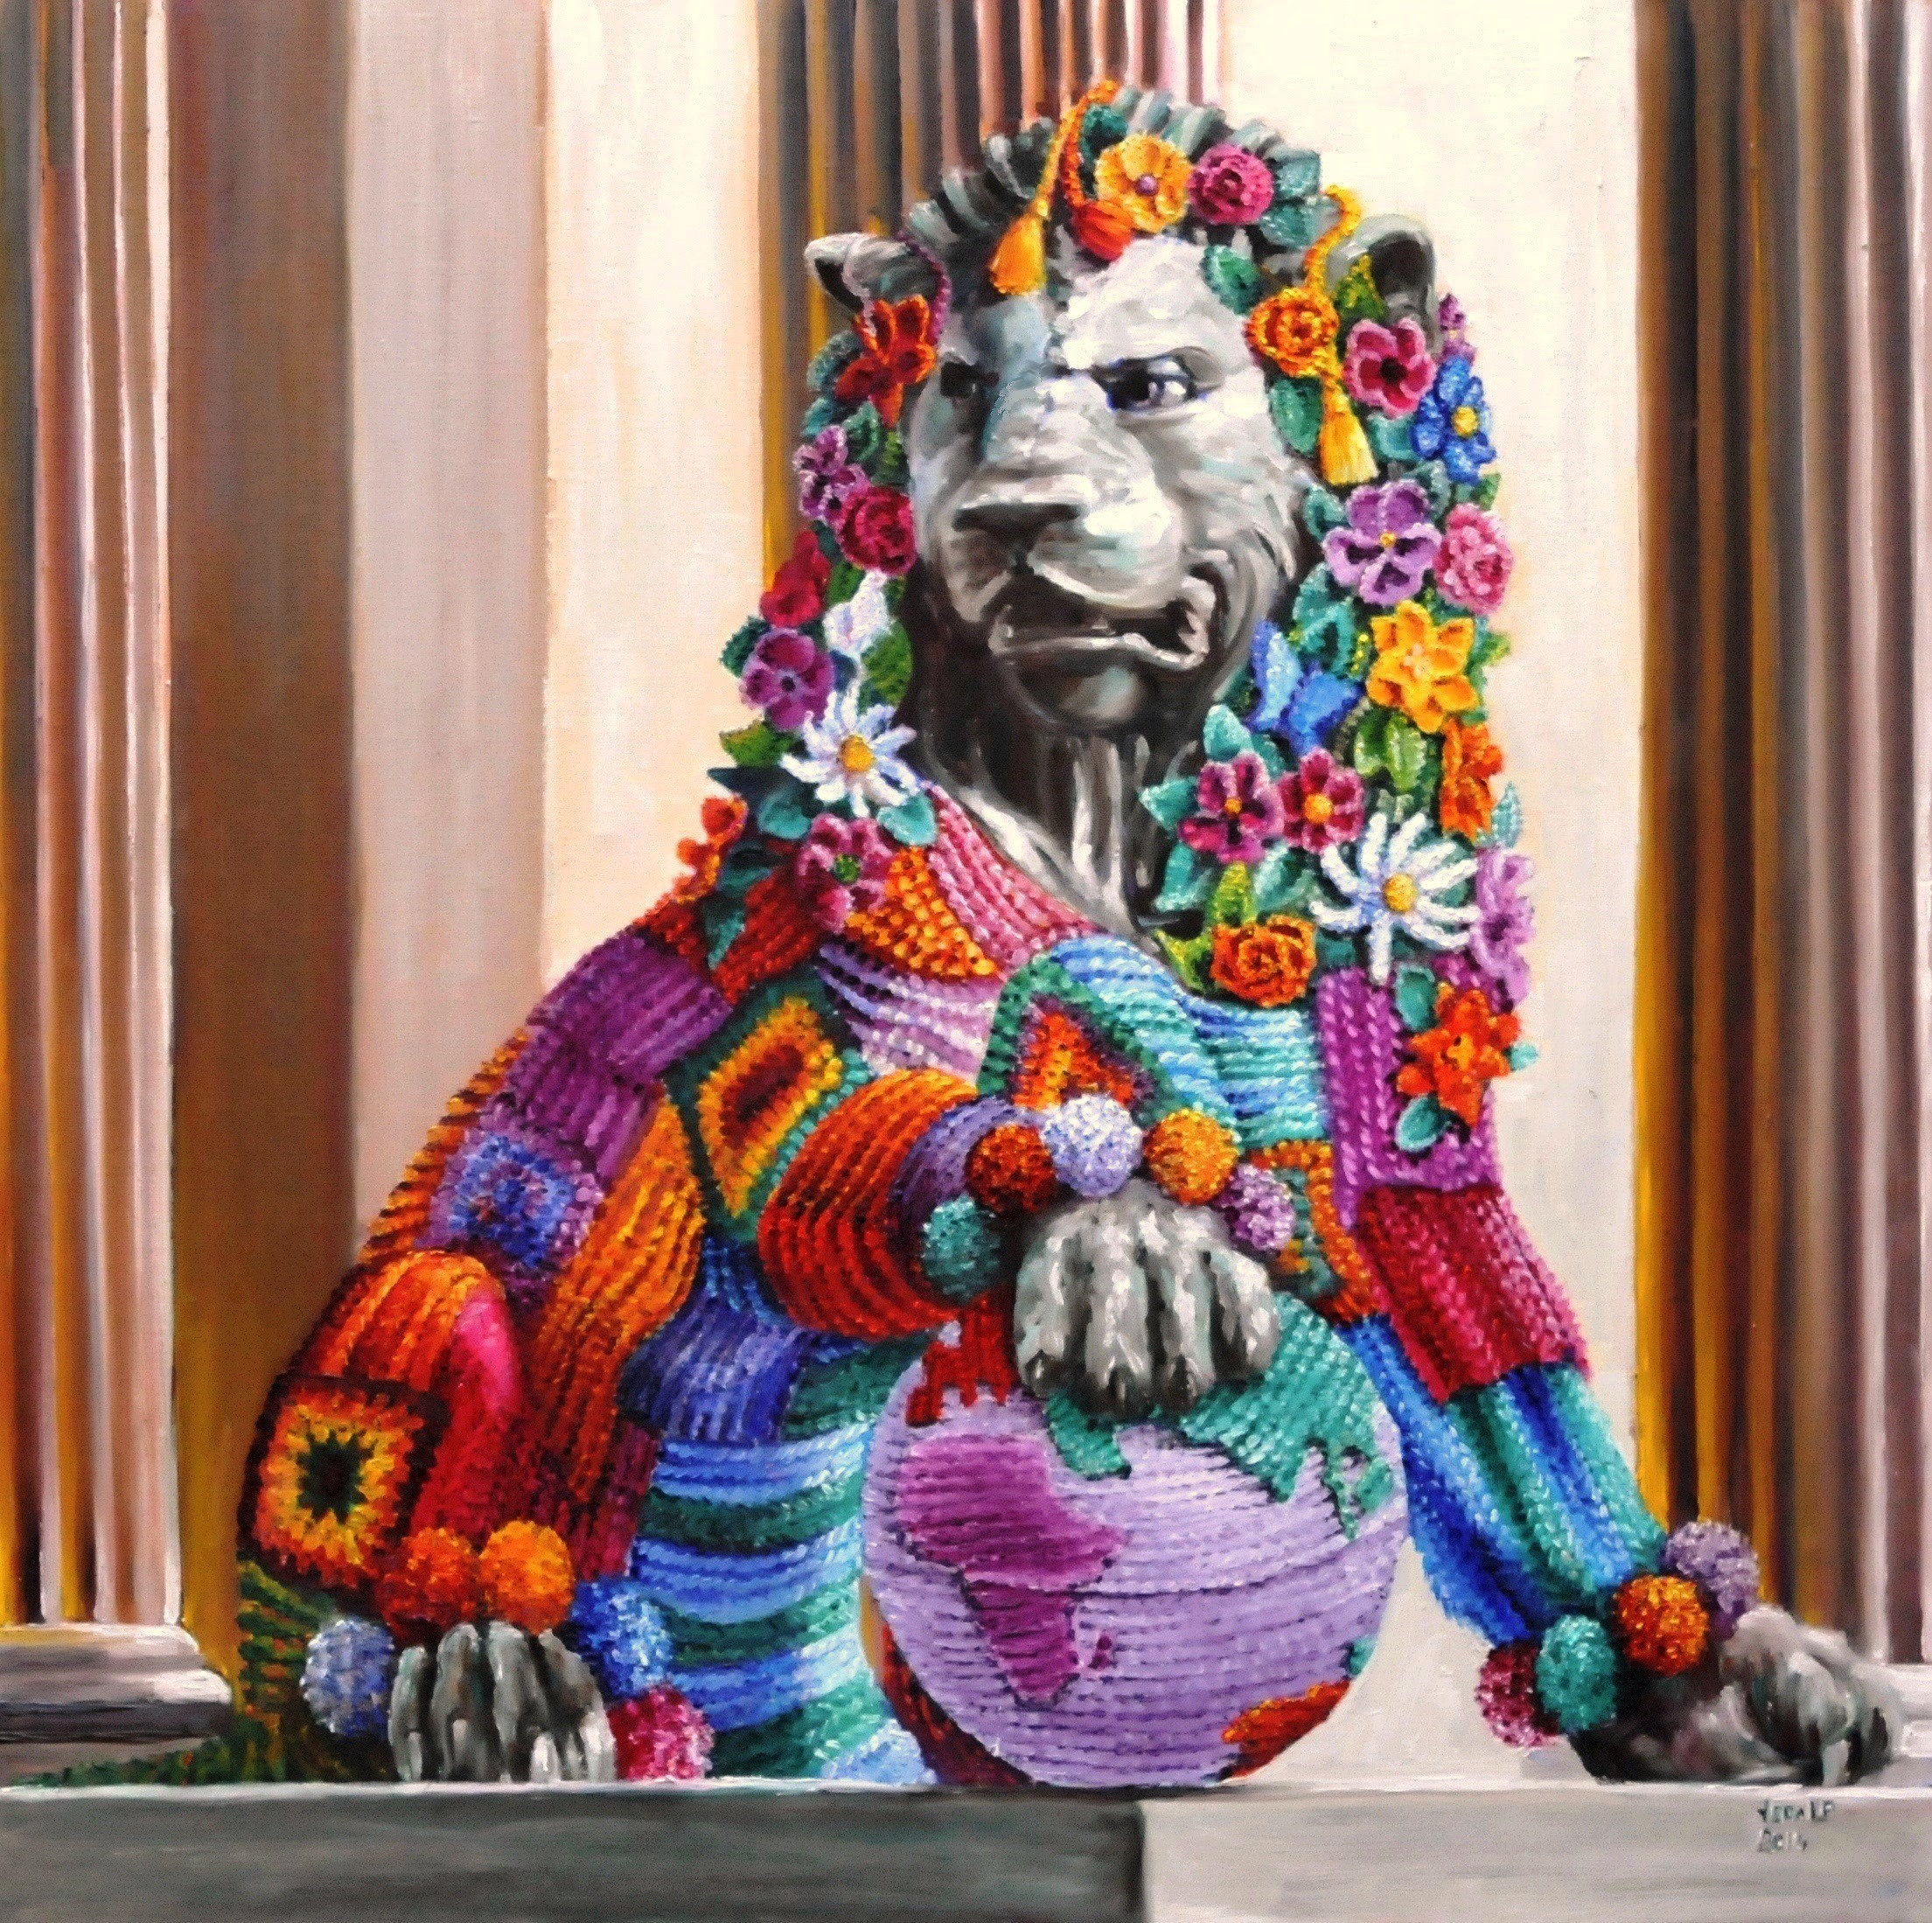 Fierce lion | Oil paint on linen | Year: 2014 | Dimensions: 90x90cm